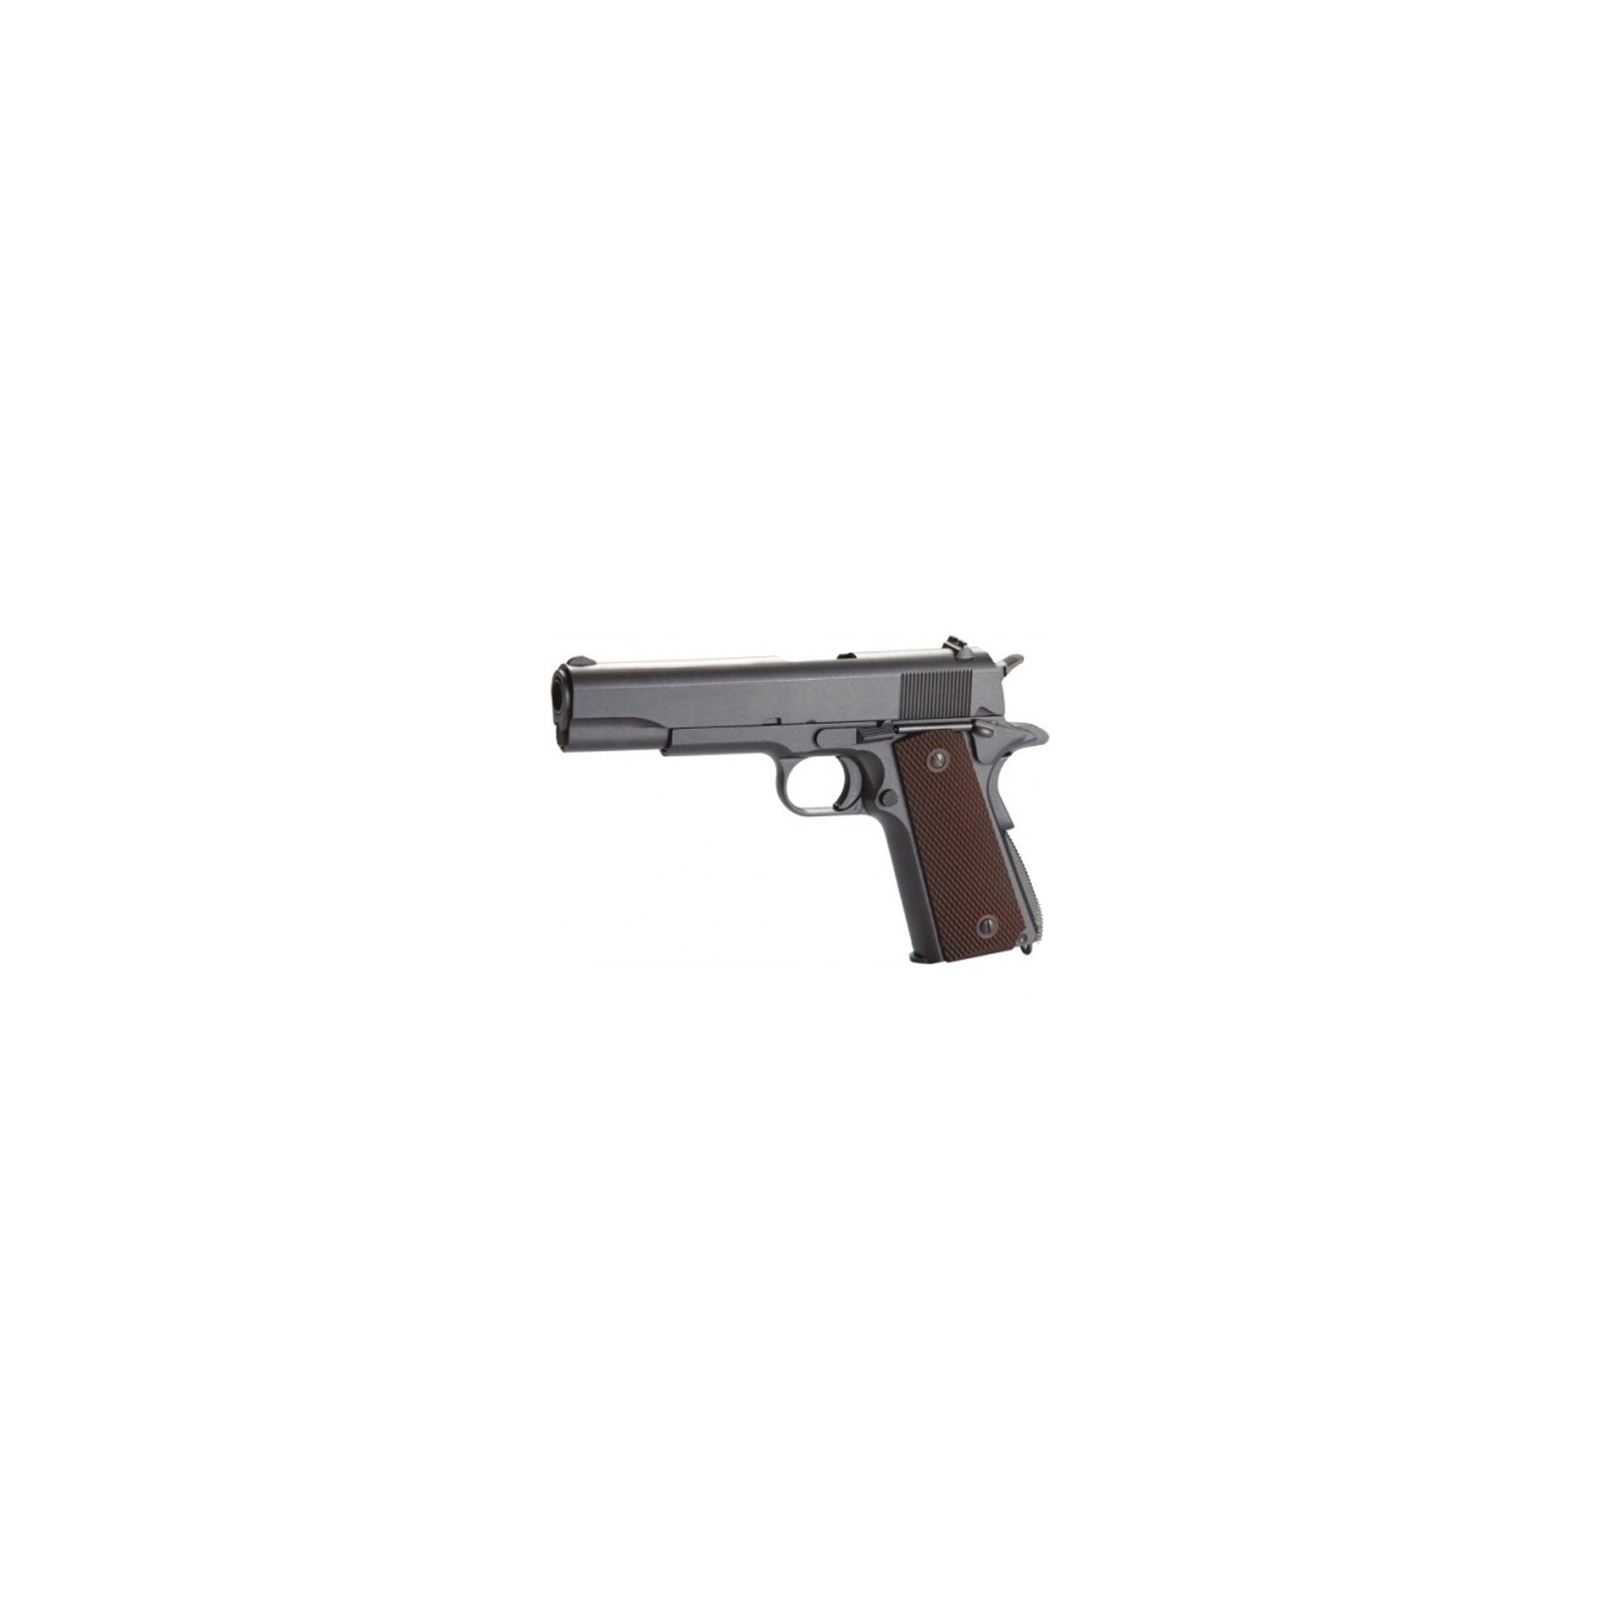 Пневматичний пістолет KWC Colt 1911 (KMB76AHN)